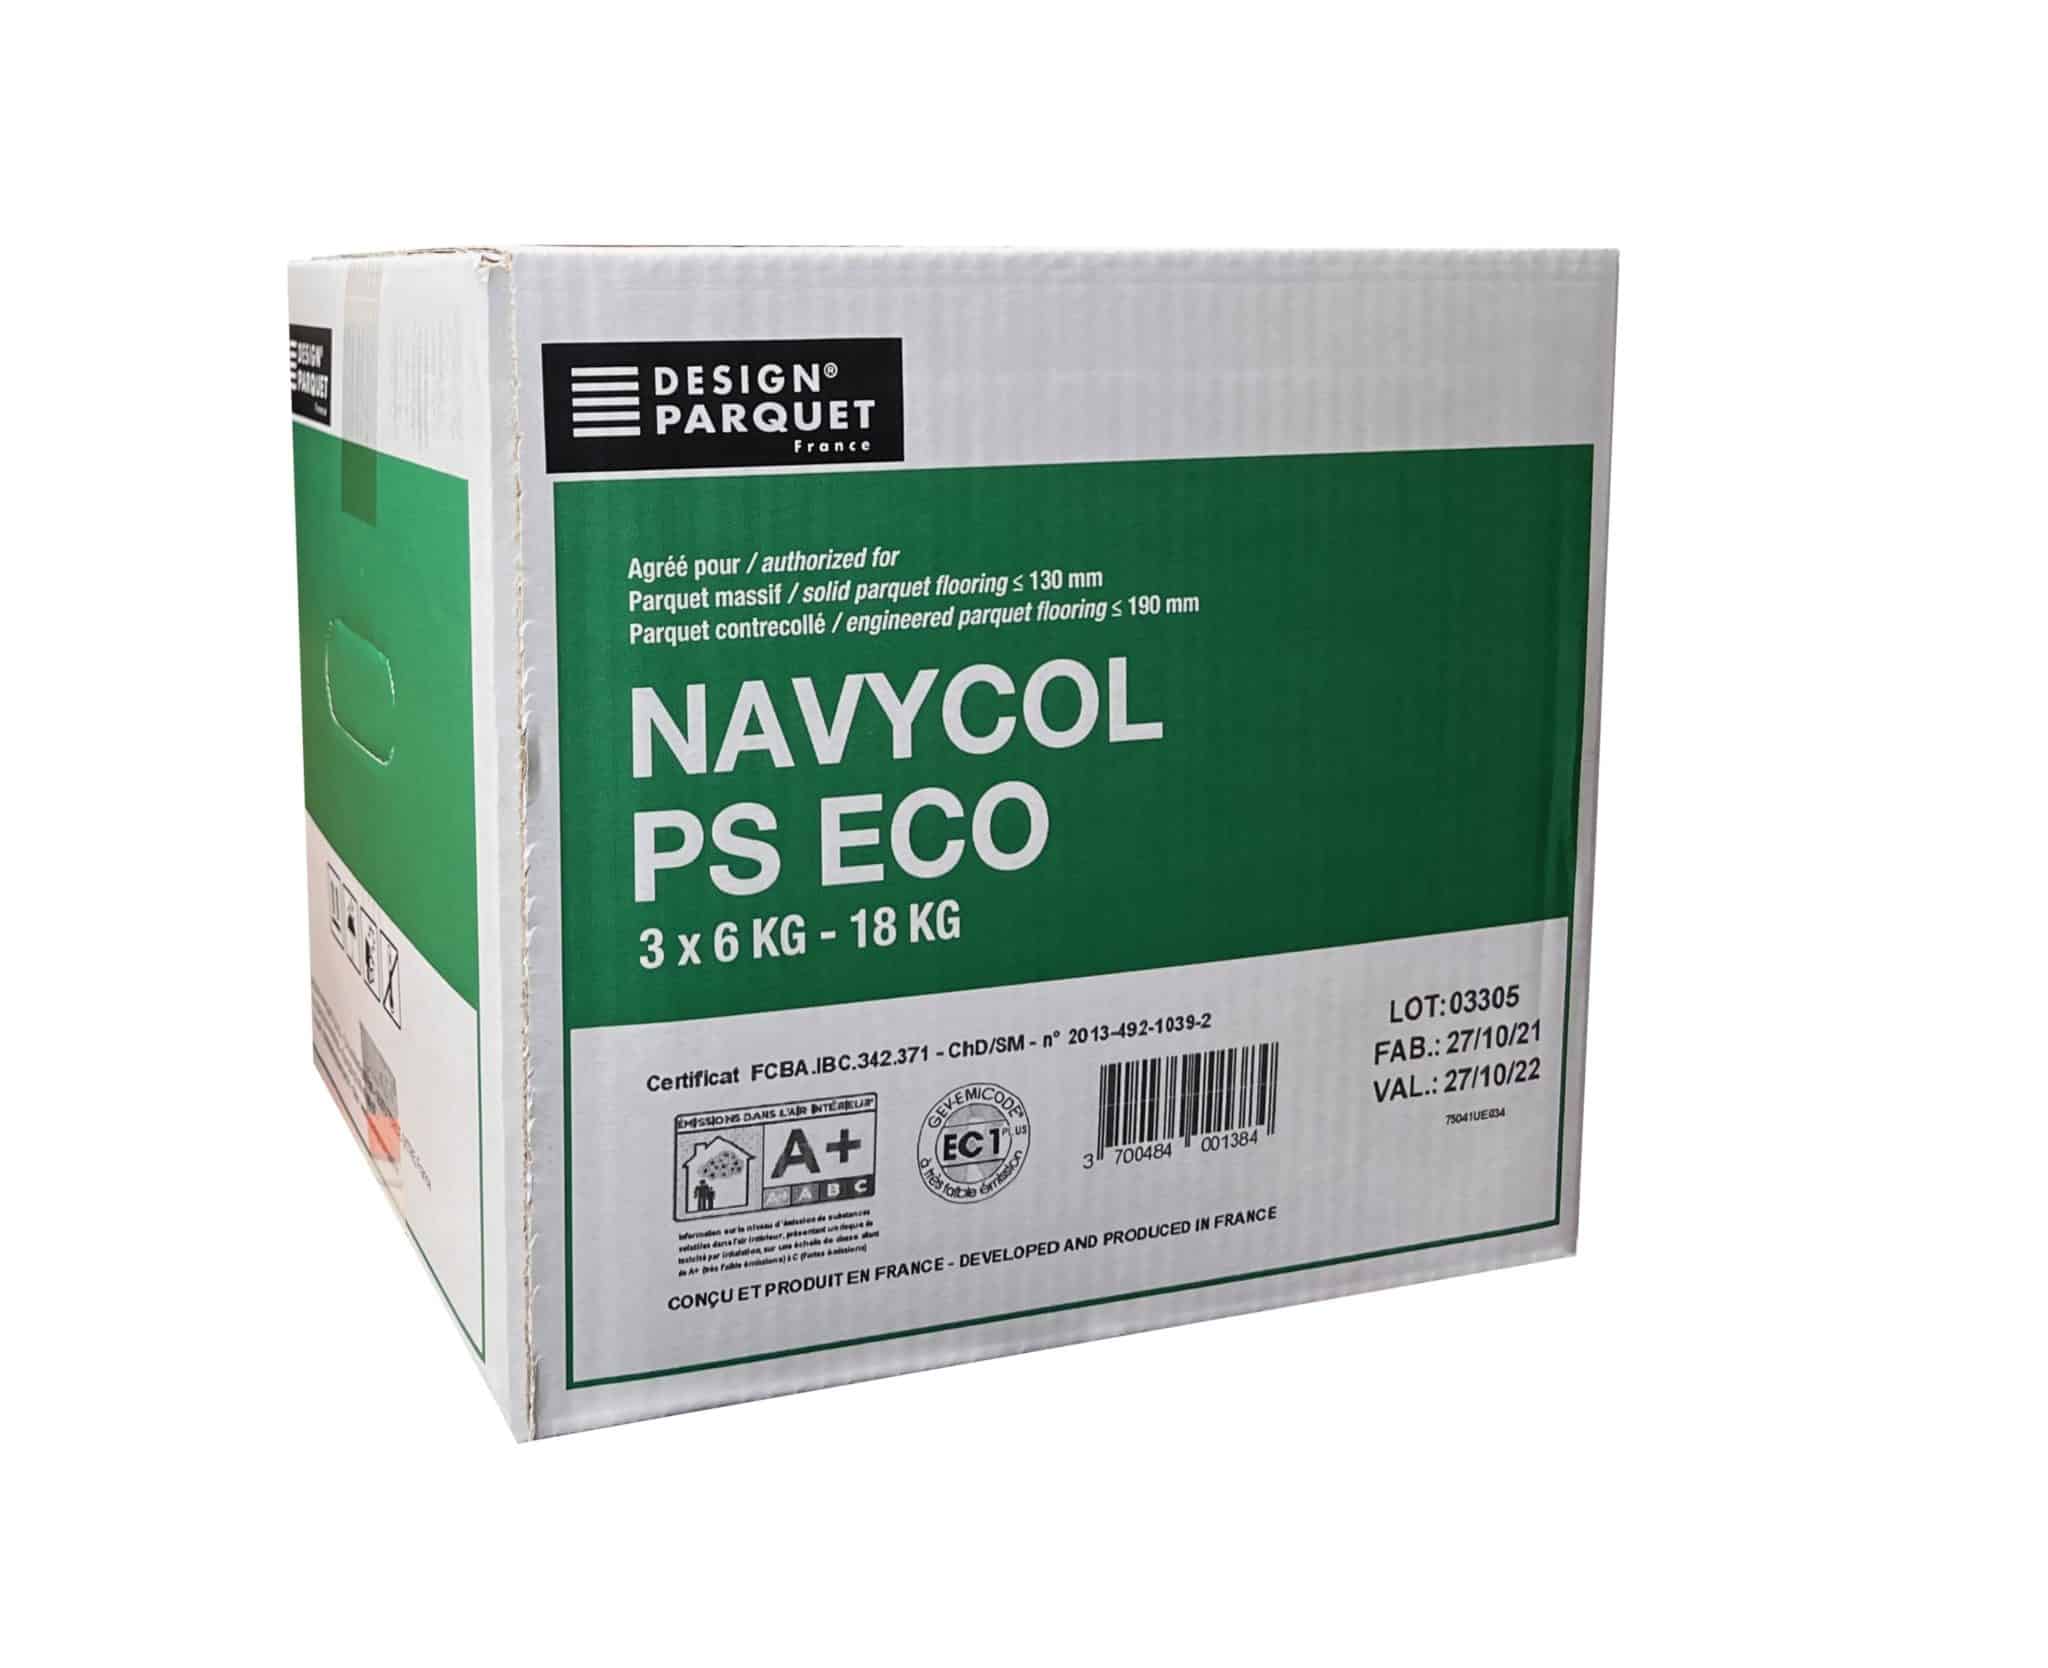 Navycol ps Eco flexible glue parquet